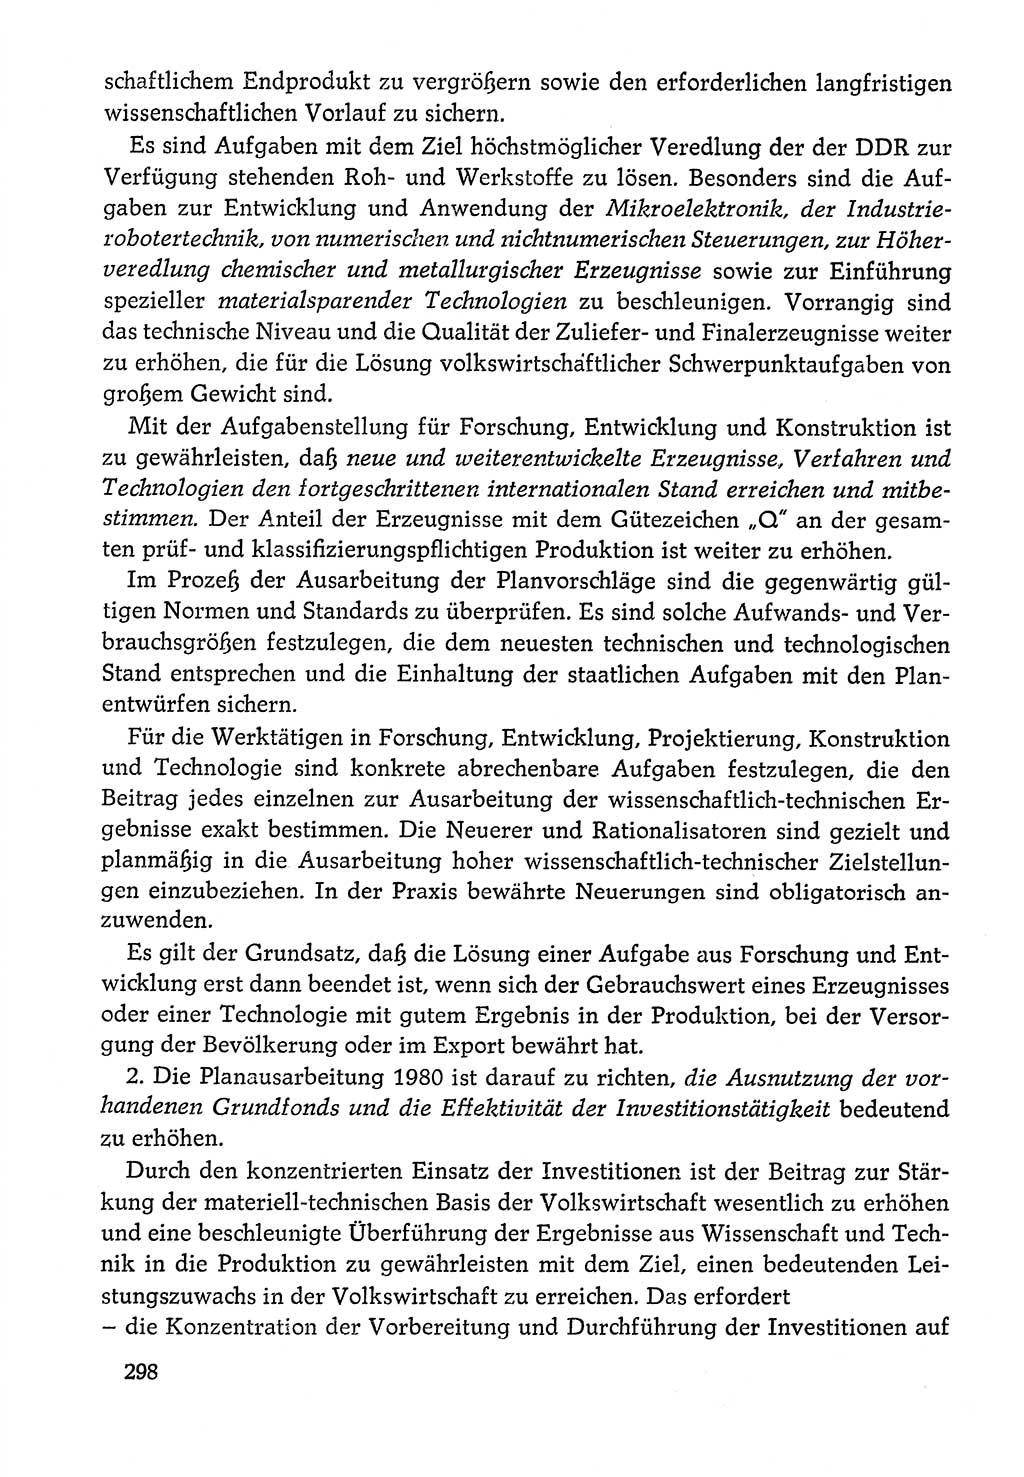 Dokumente der Sozialistischen Einheitspartei Deutschlands (SED) [Deutsche Demokratische Republik (DDR)] 1978-1979, Seite 298 (Dok. SED DDR 1978-1979, S. 298)